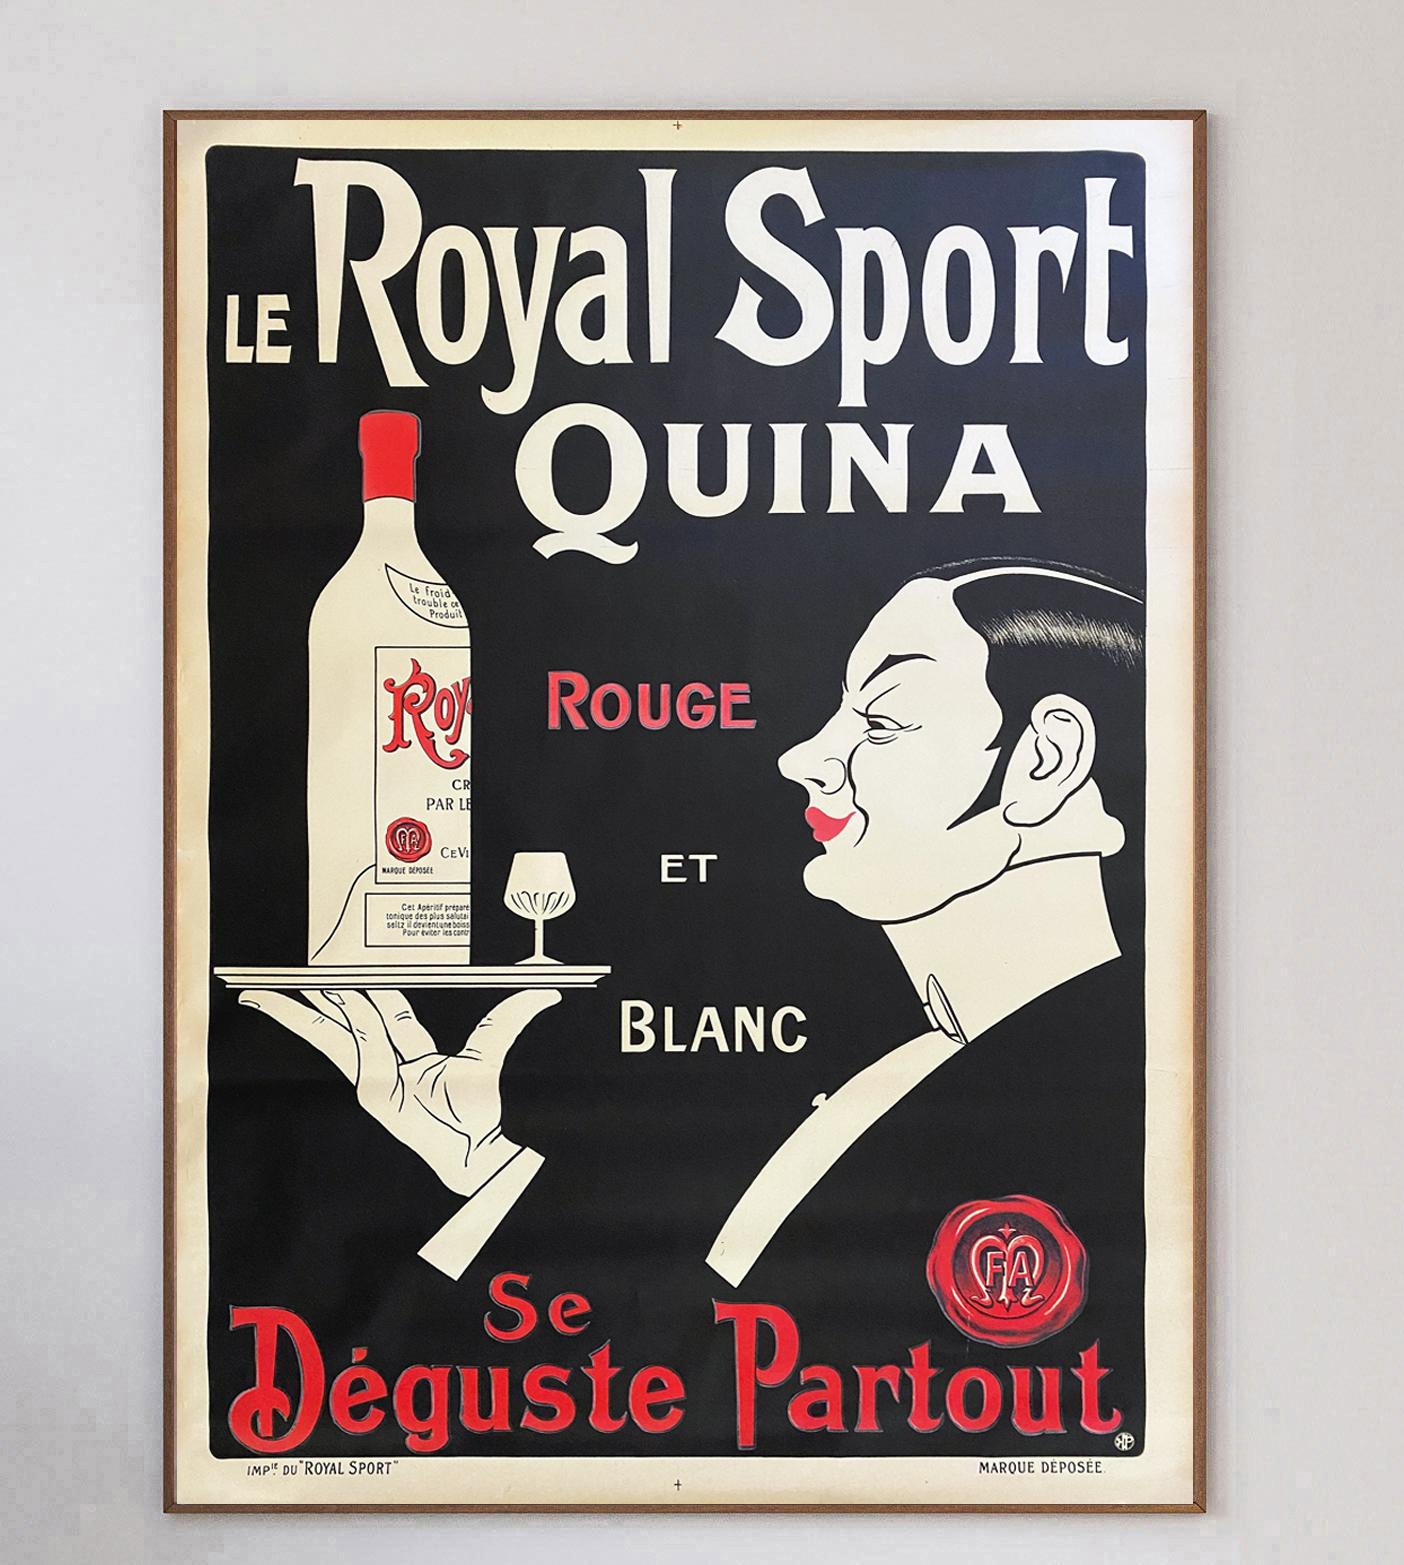 Belle affiche créée pour Le Royal Sport Quina en 1920. Avec la mention 